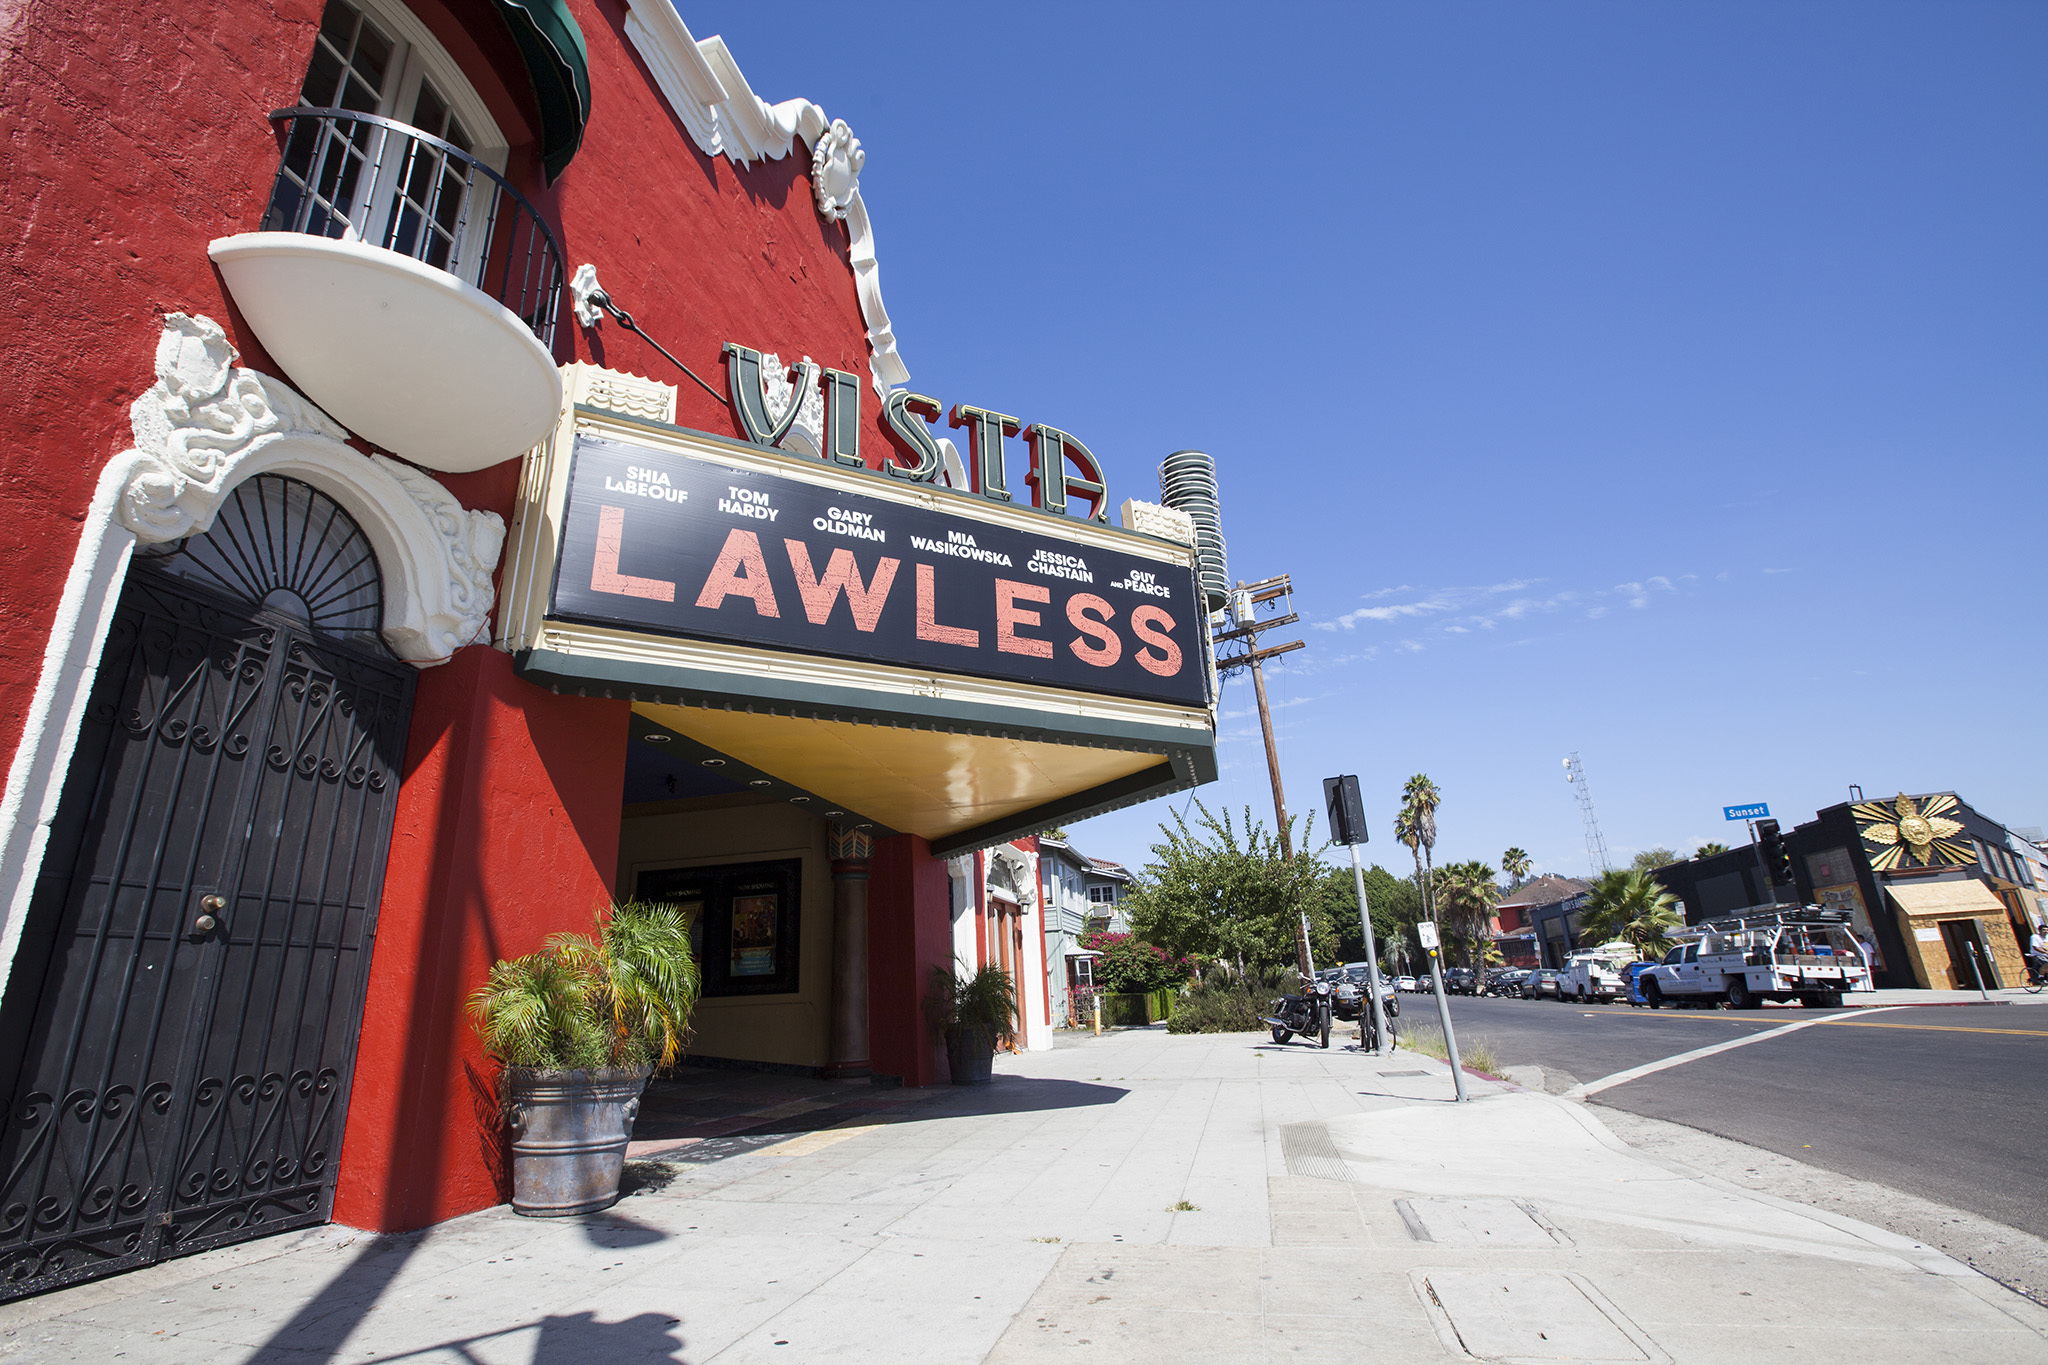 Los Feliz Theatre  Discover Los Angeles